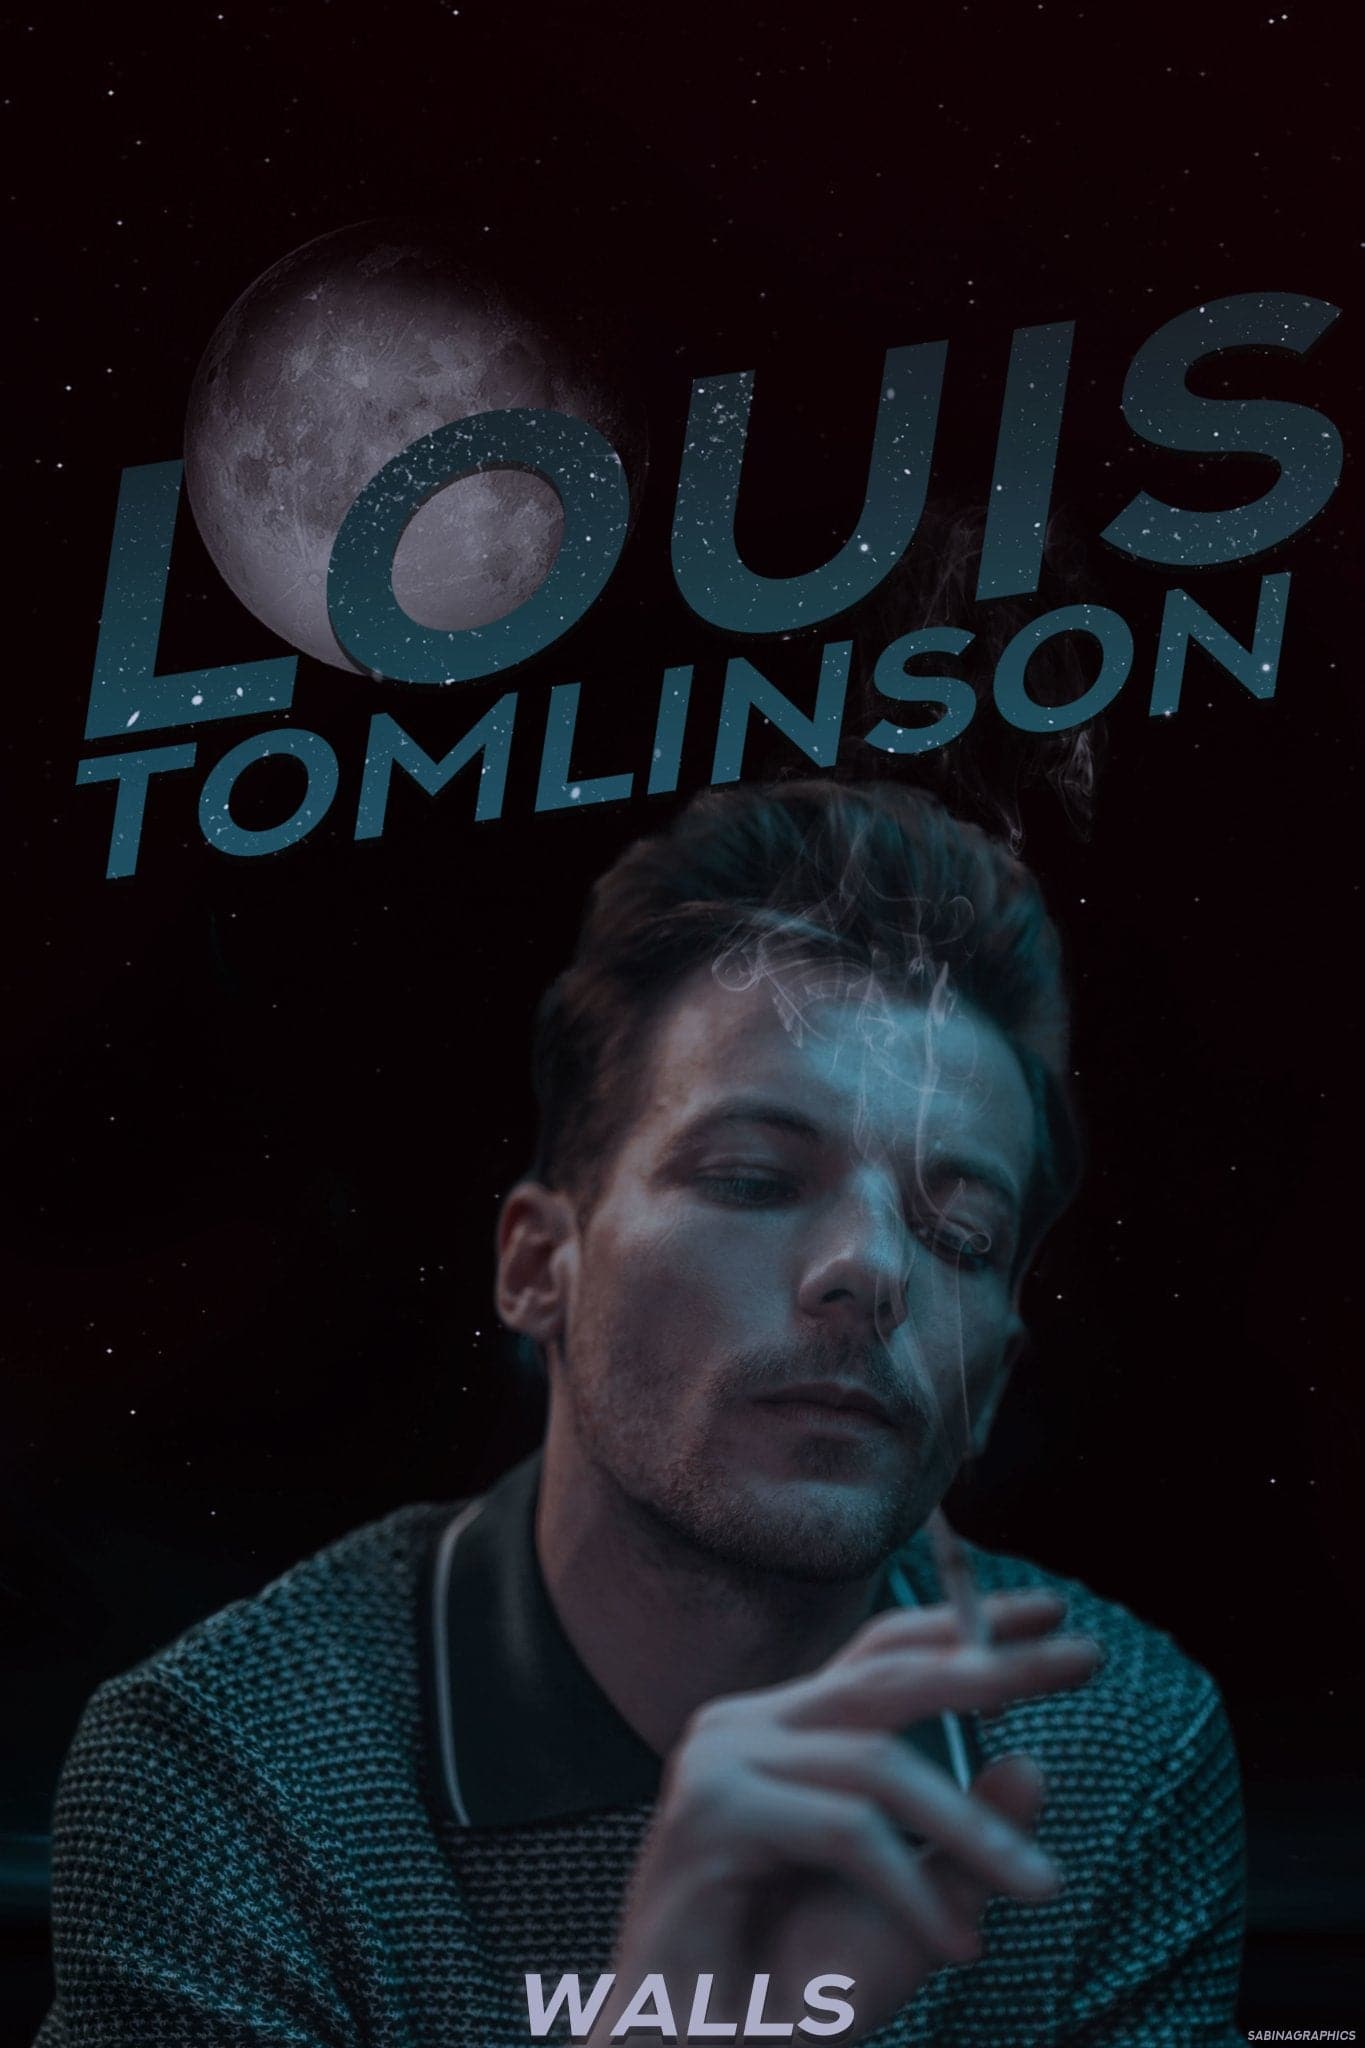  Louis Tomlinson Poster